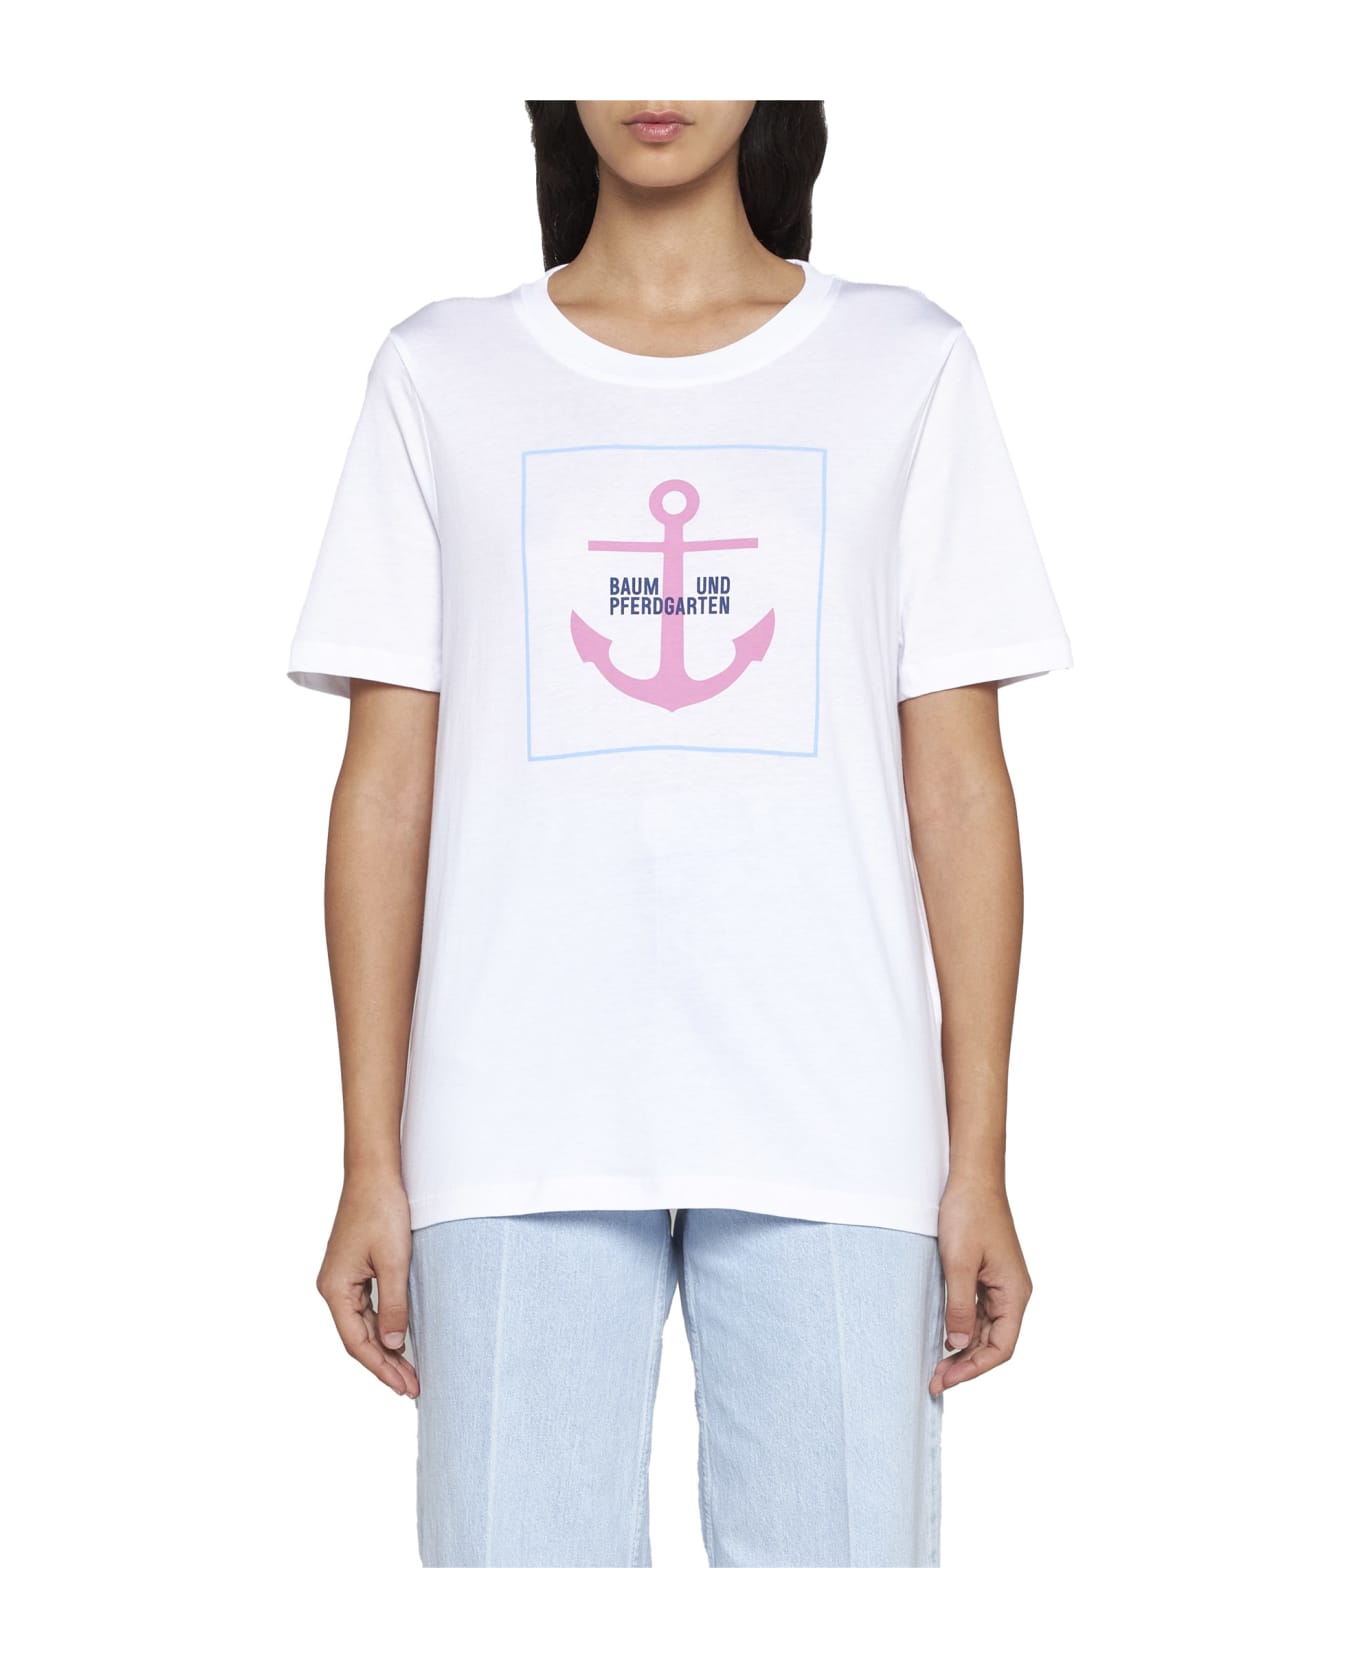 Baum und Pferdgarten T-Shirt - White pink anchor